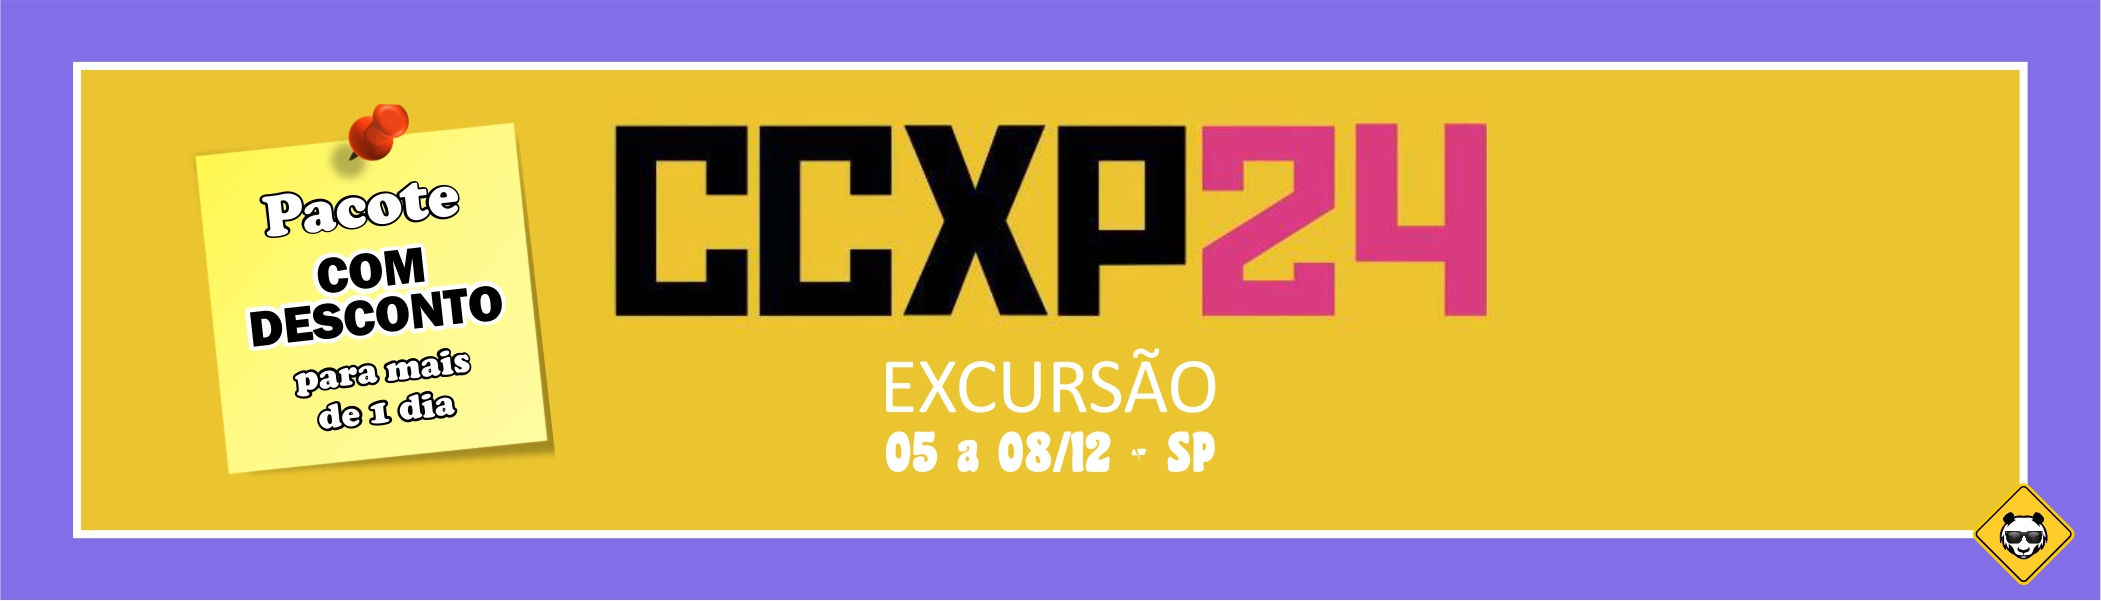 CCXP - Comic Con